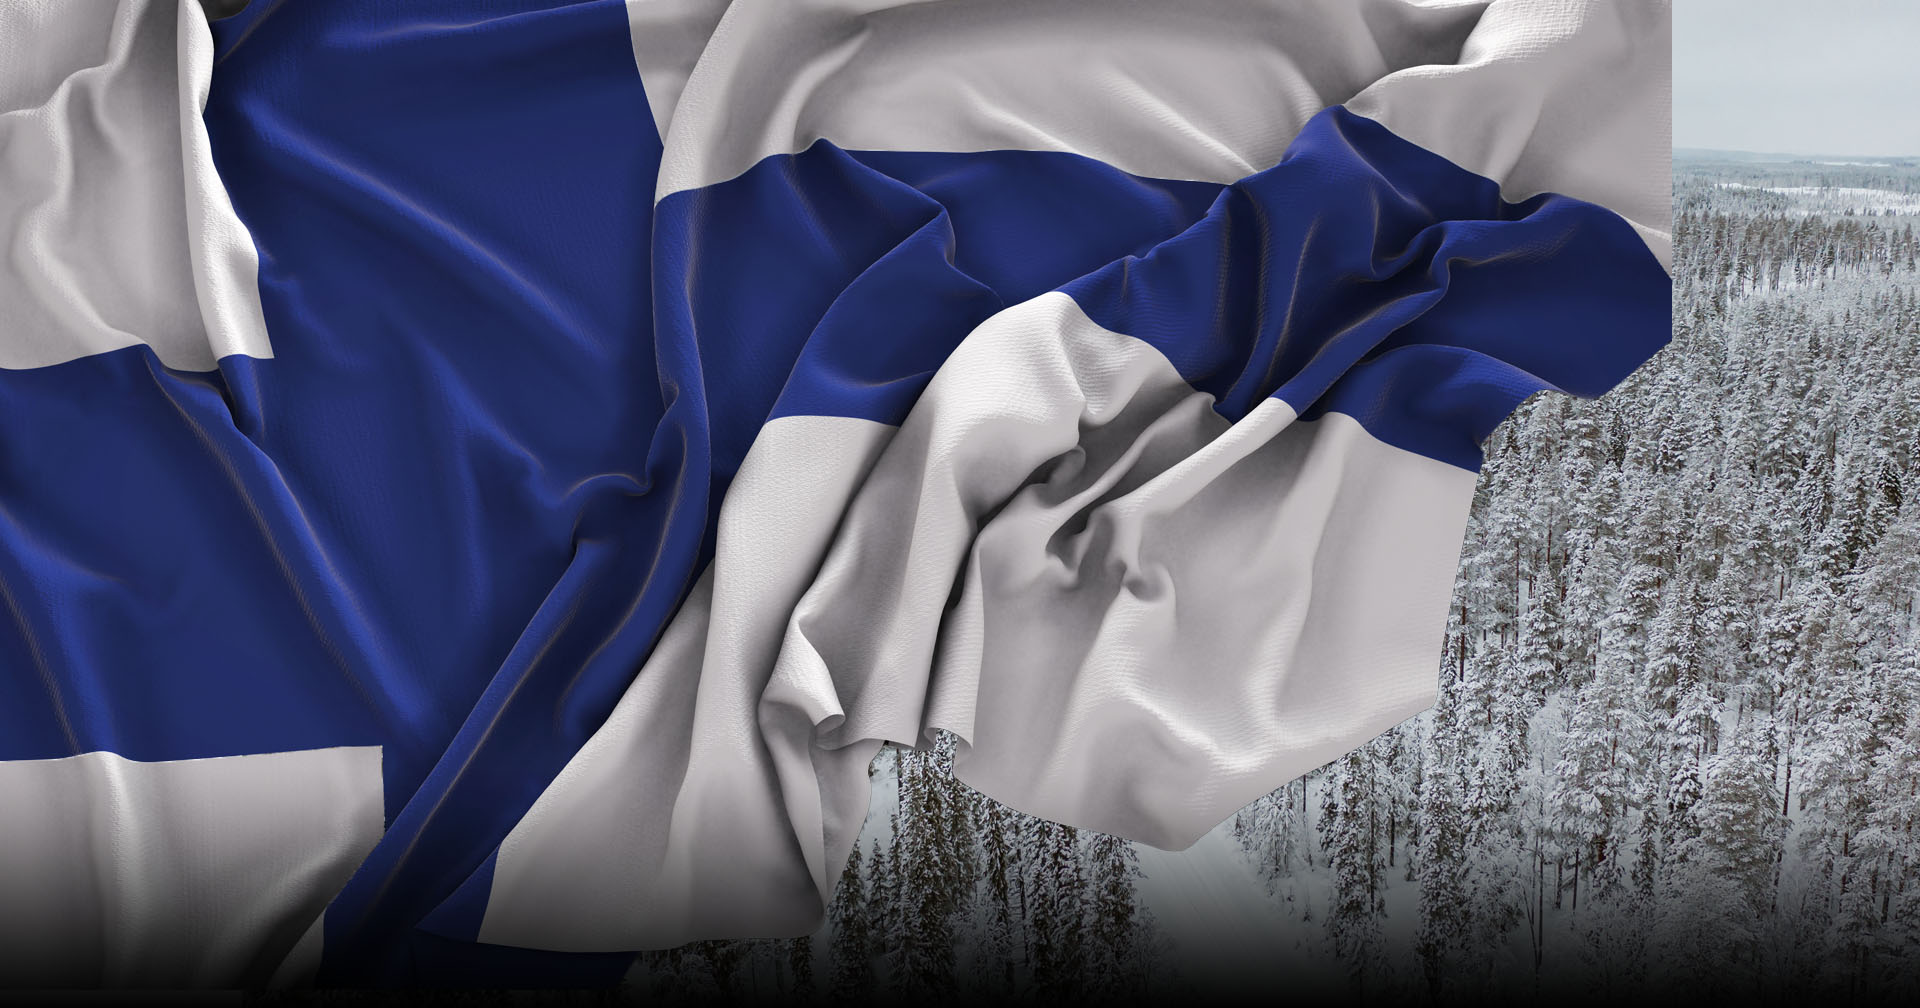 ฟินแลนด์ผ่านกฏหมายสร้างรั้วถาวรกั้นพรมแดน ฟินแลนด์-รัสเซีย